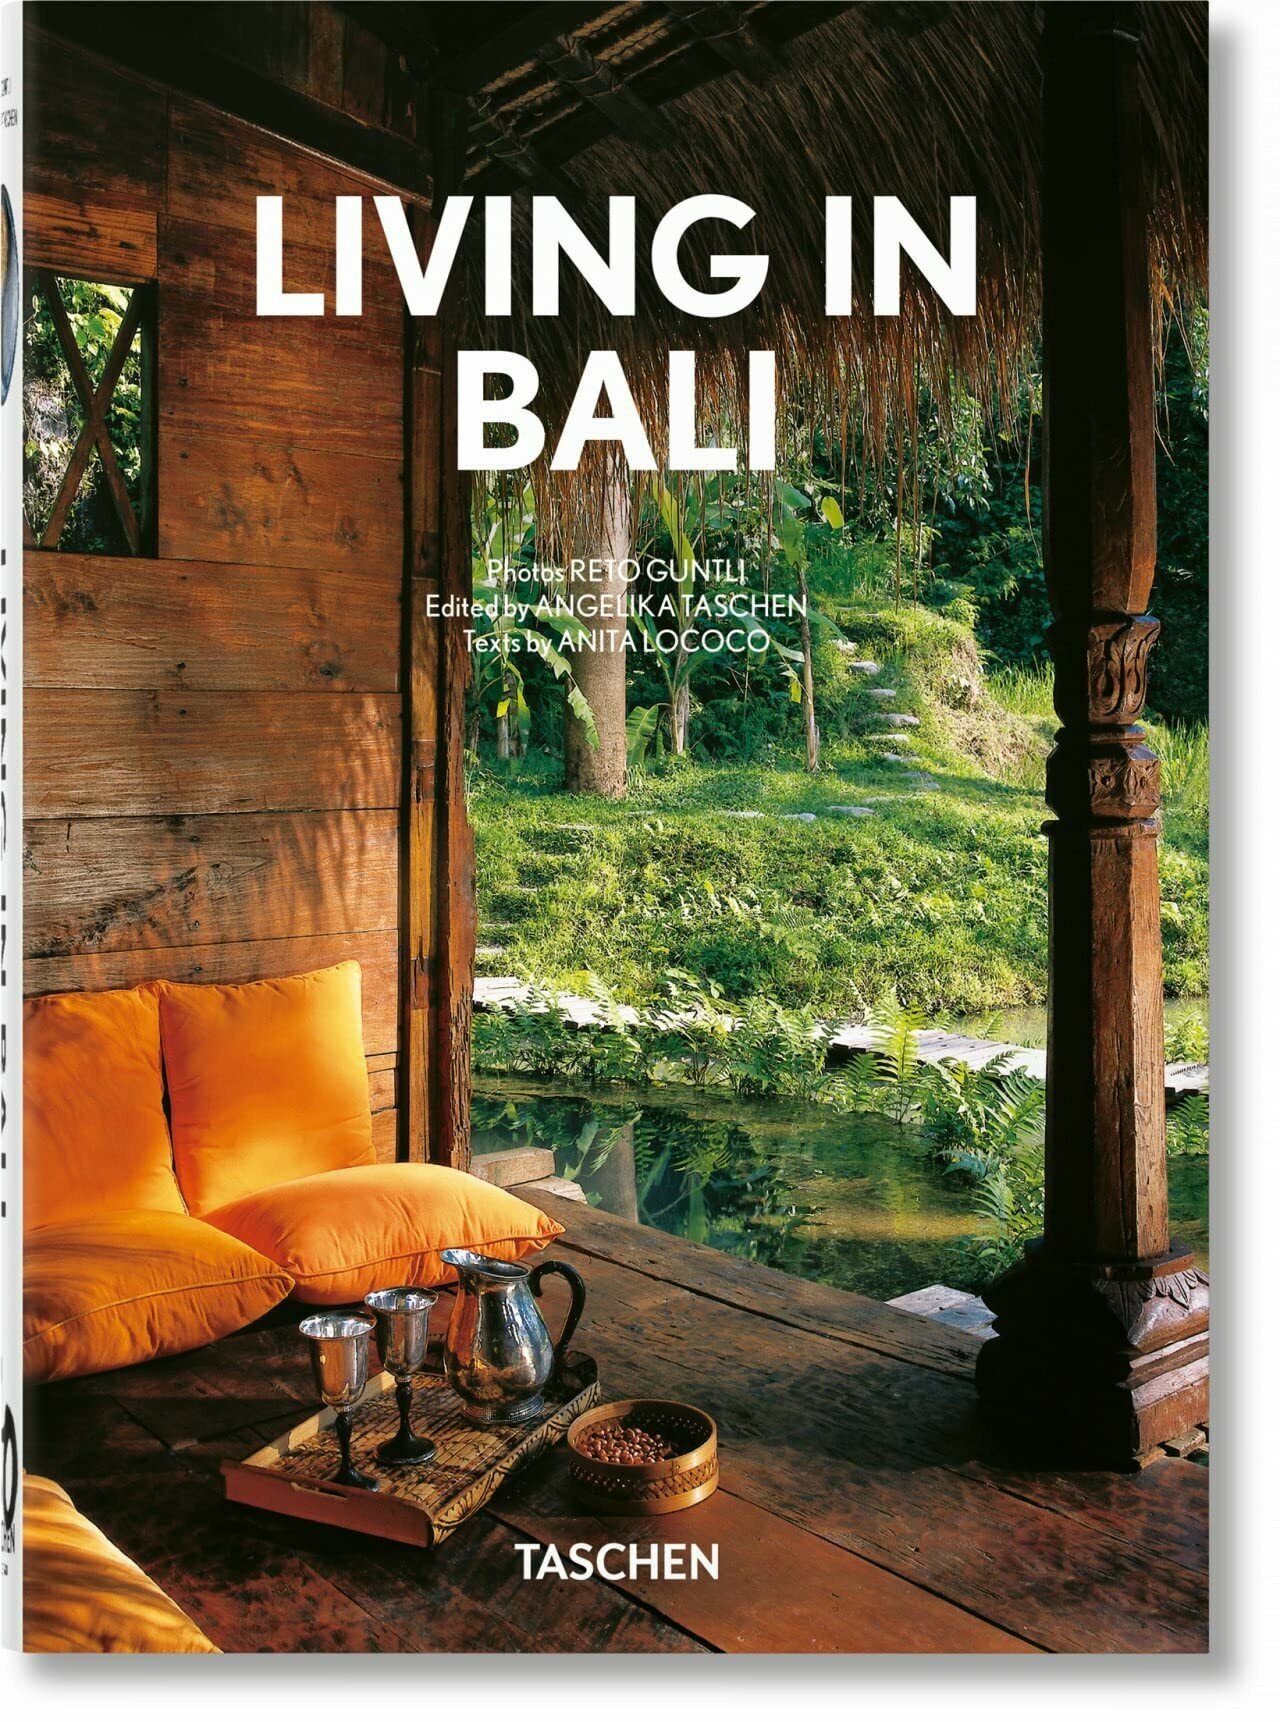 Lococo, Anita "Living in Bali. 40th anniversary edition"